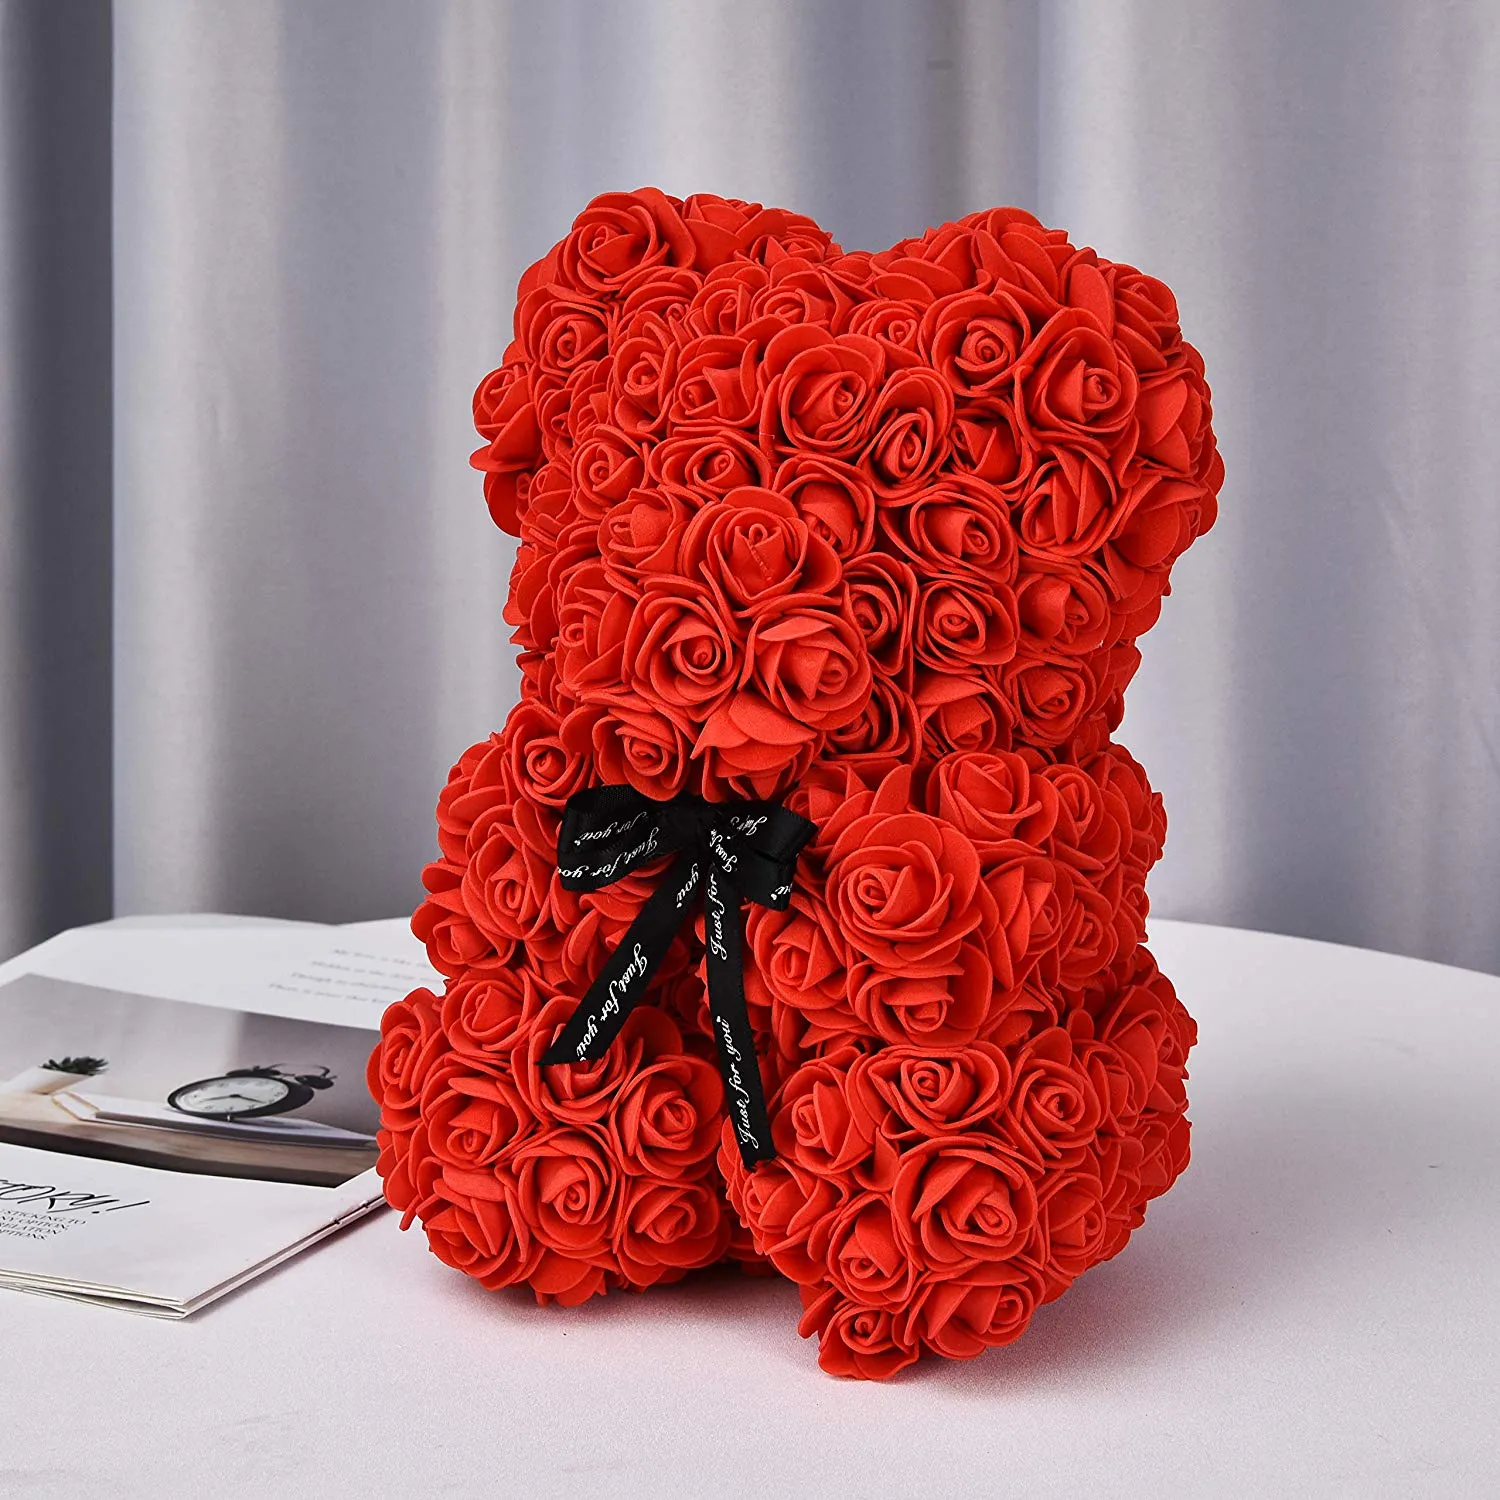 Fiori Rose Bear Rose Teddy Bear Regalo San Valentino Anniversario Compleanni Bridal Showers Completamente assemblato 10 pollici Bea3452145